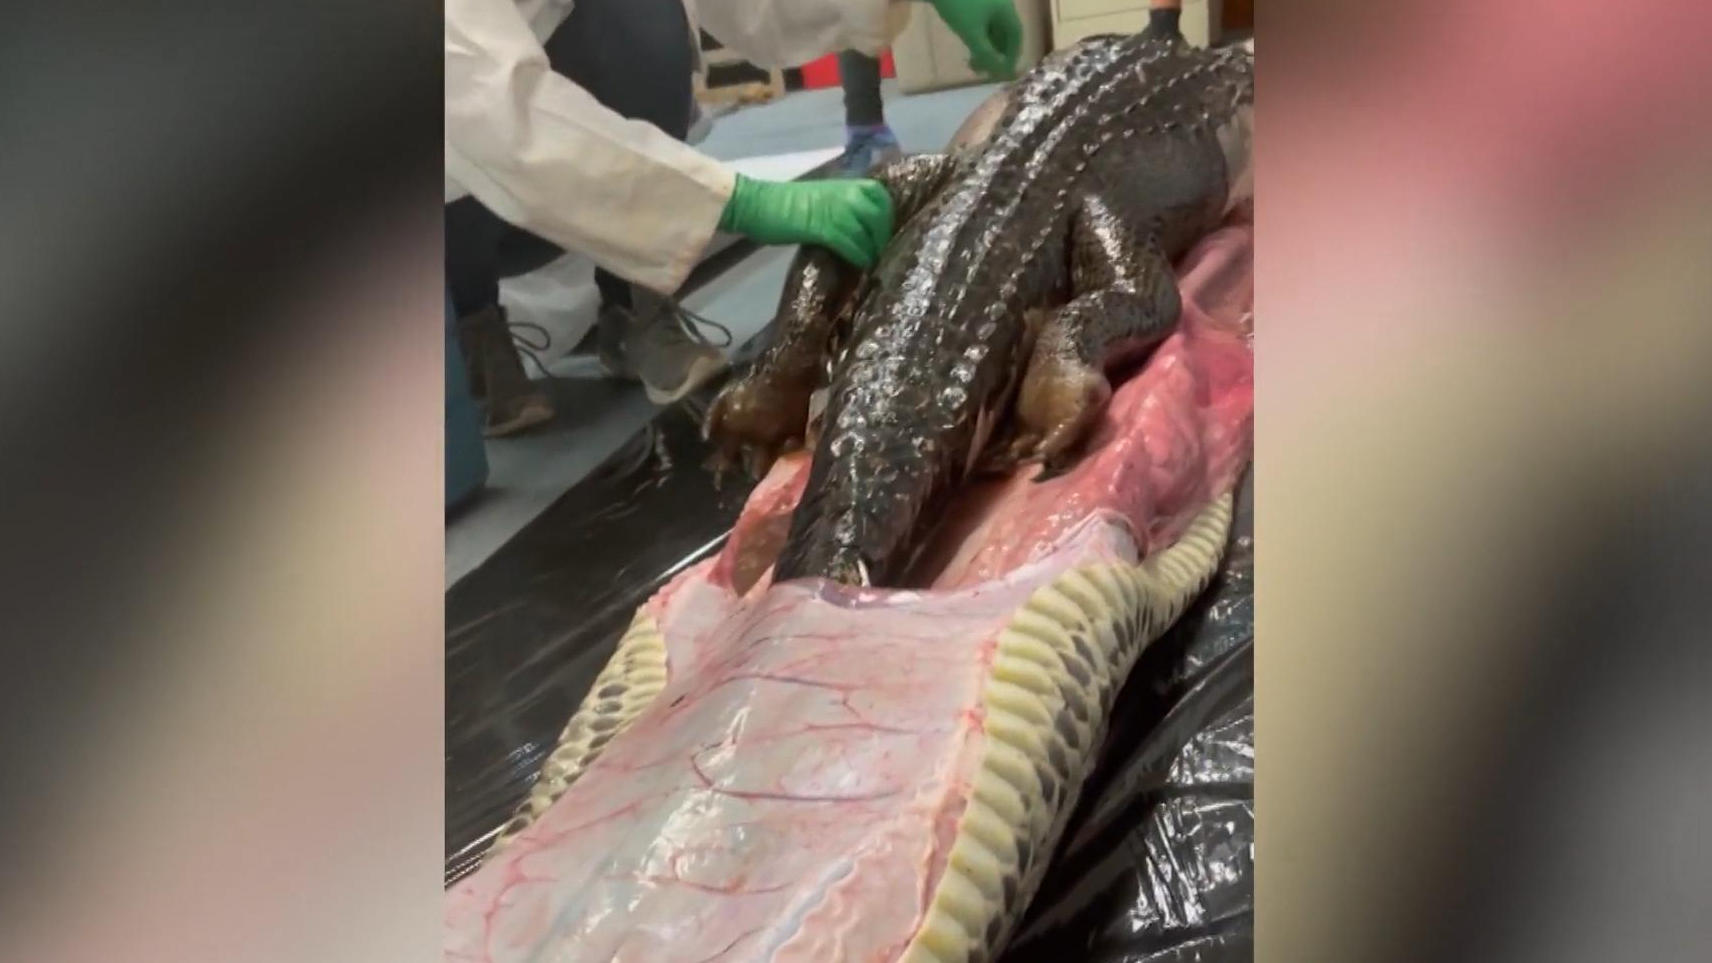 Verstörend! Schlange aufgeschnitten - Riesen-Alligator drin Nichts für schwache Nerven